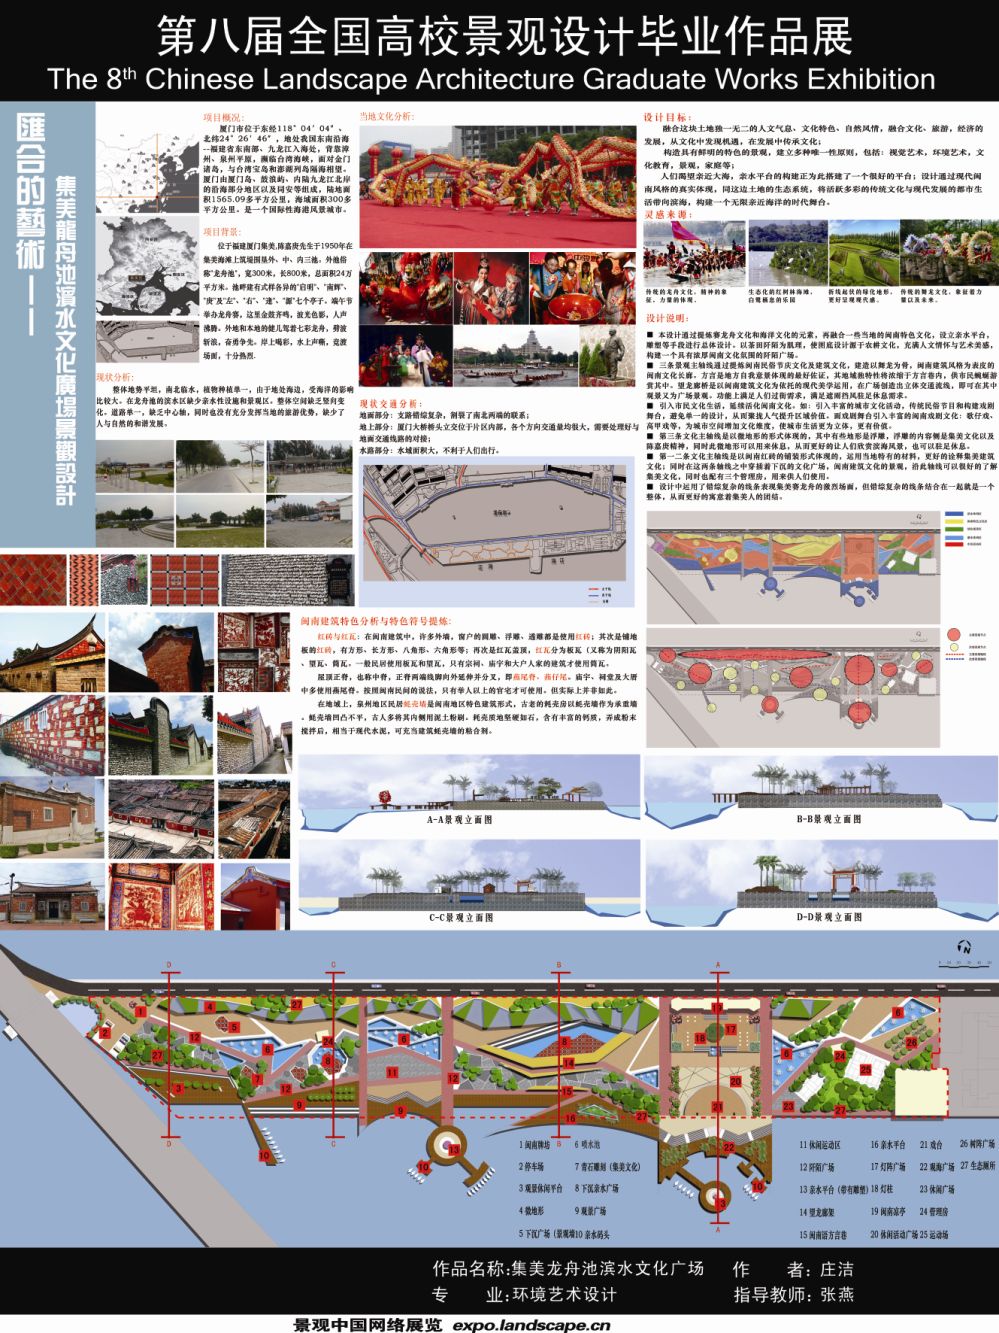 集美区龙舟池滨水文化广场景观设计-1